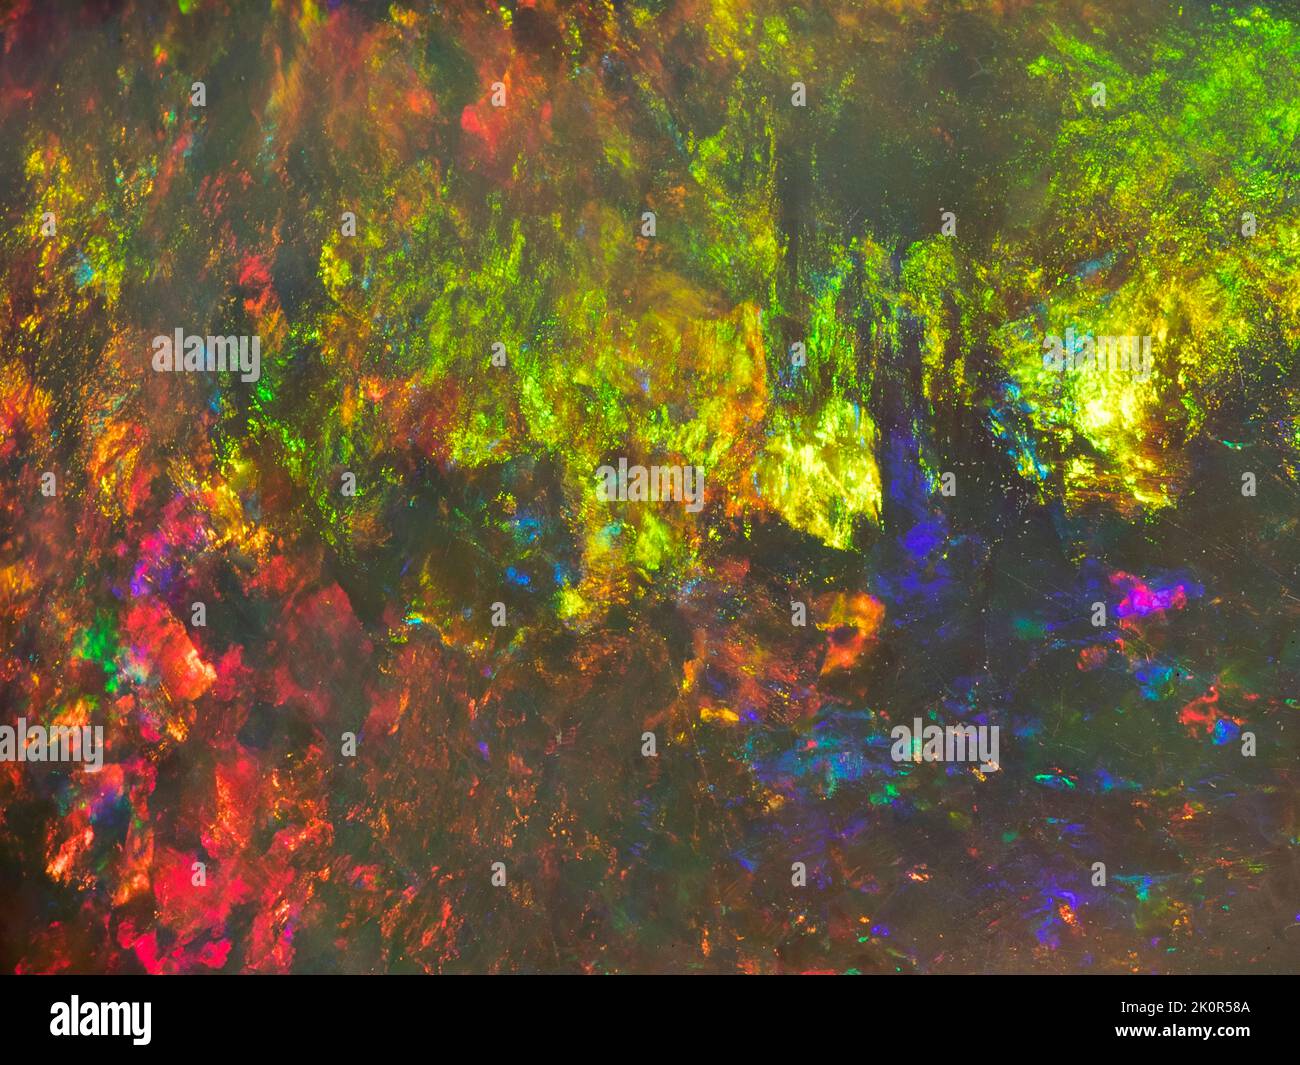 Australische Opal-Edelsteine, aufgenommen auf einem schwarzen Hintergrund, um die wunderschöne Farbe und das Muster dieses Natursteins hervorzuheben. Projekt mit Damien Hirst. Stockfoto